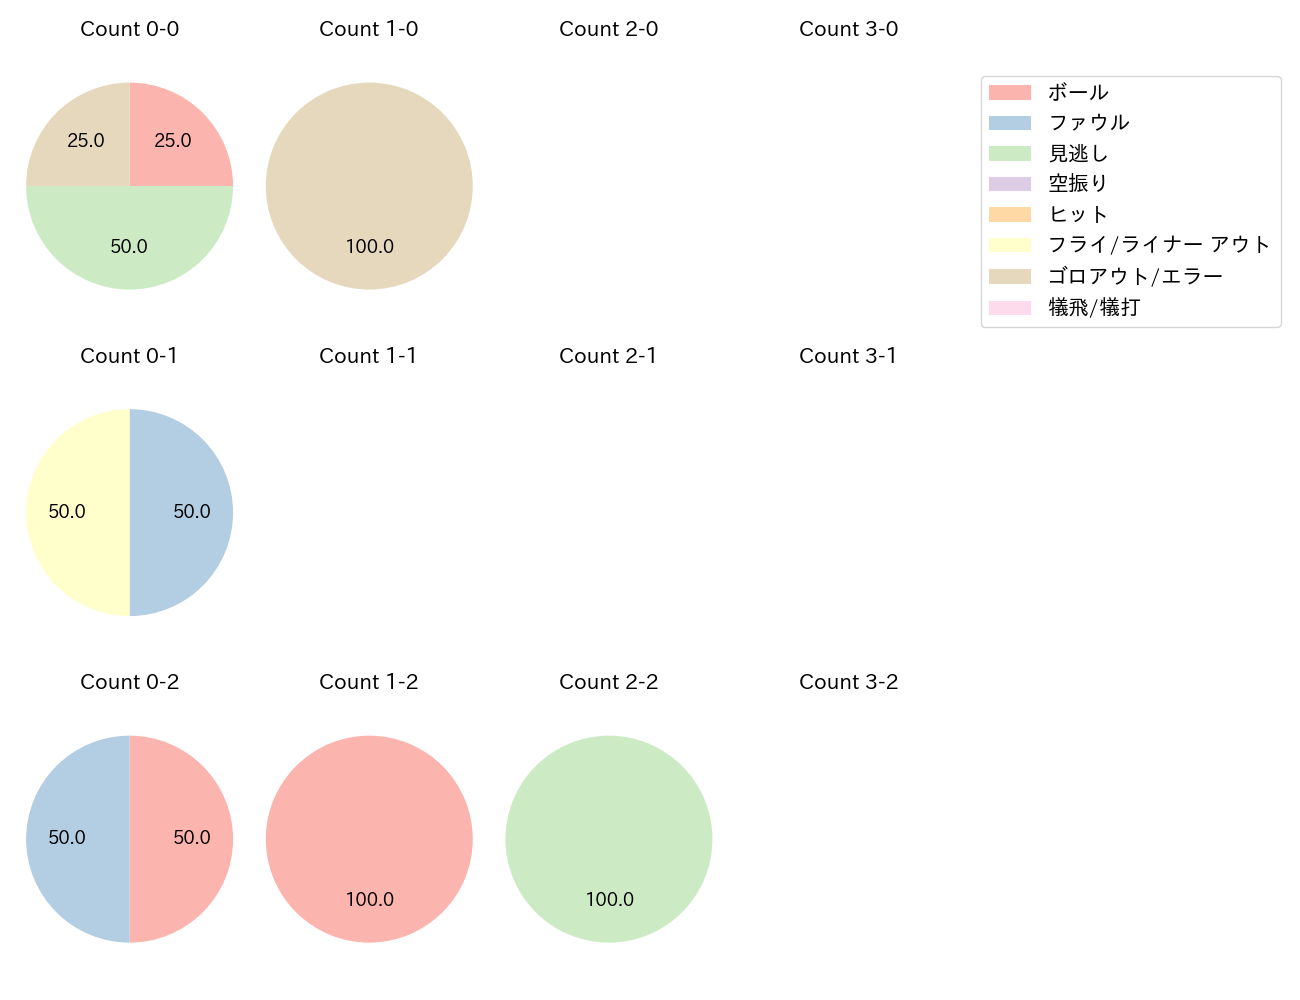 小野寺 暖の球数分布(2021年7月)